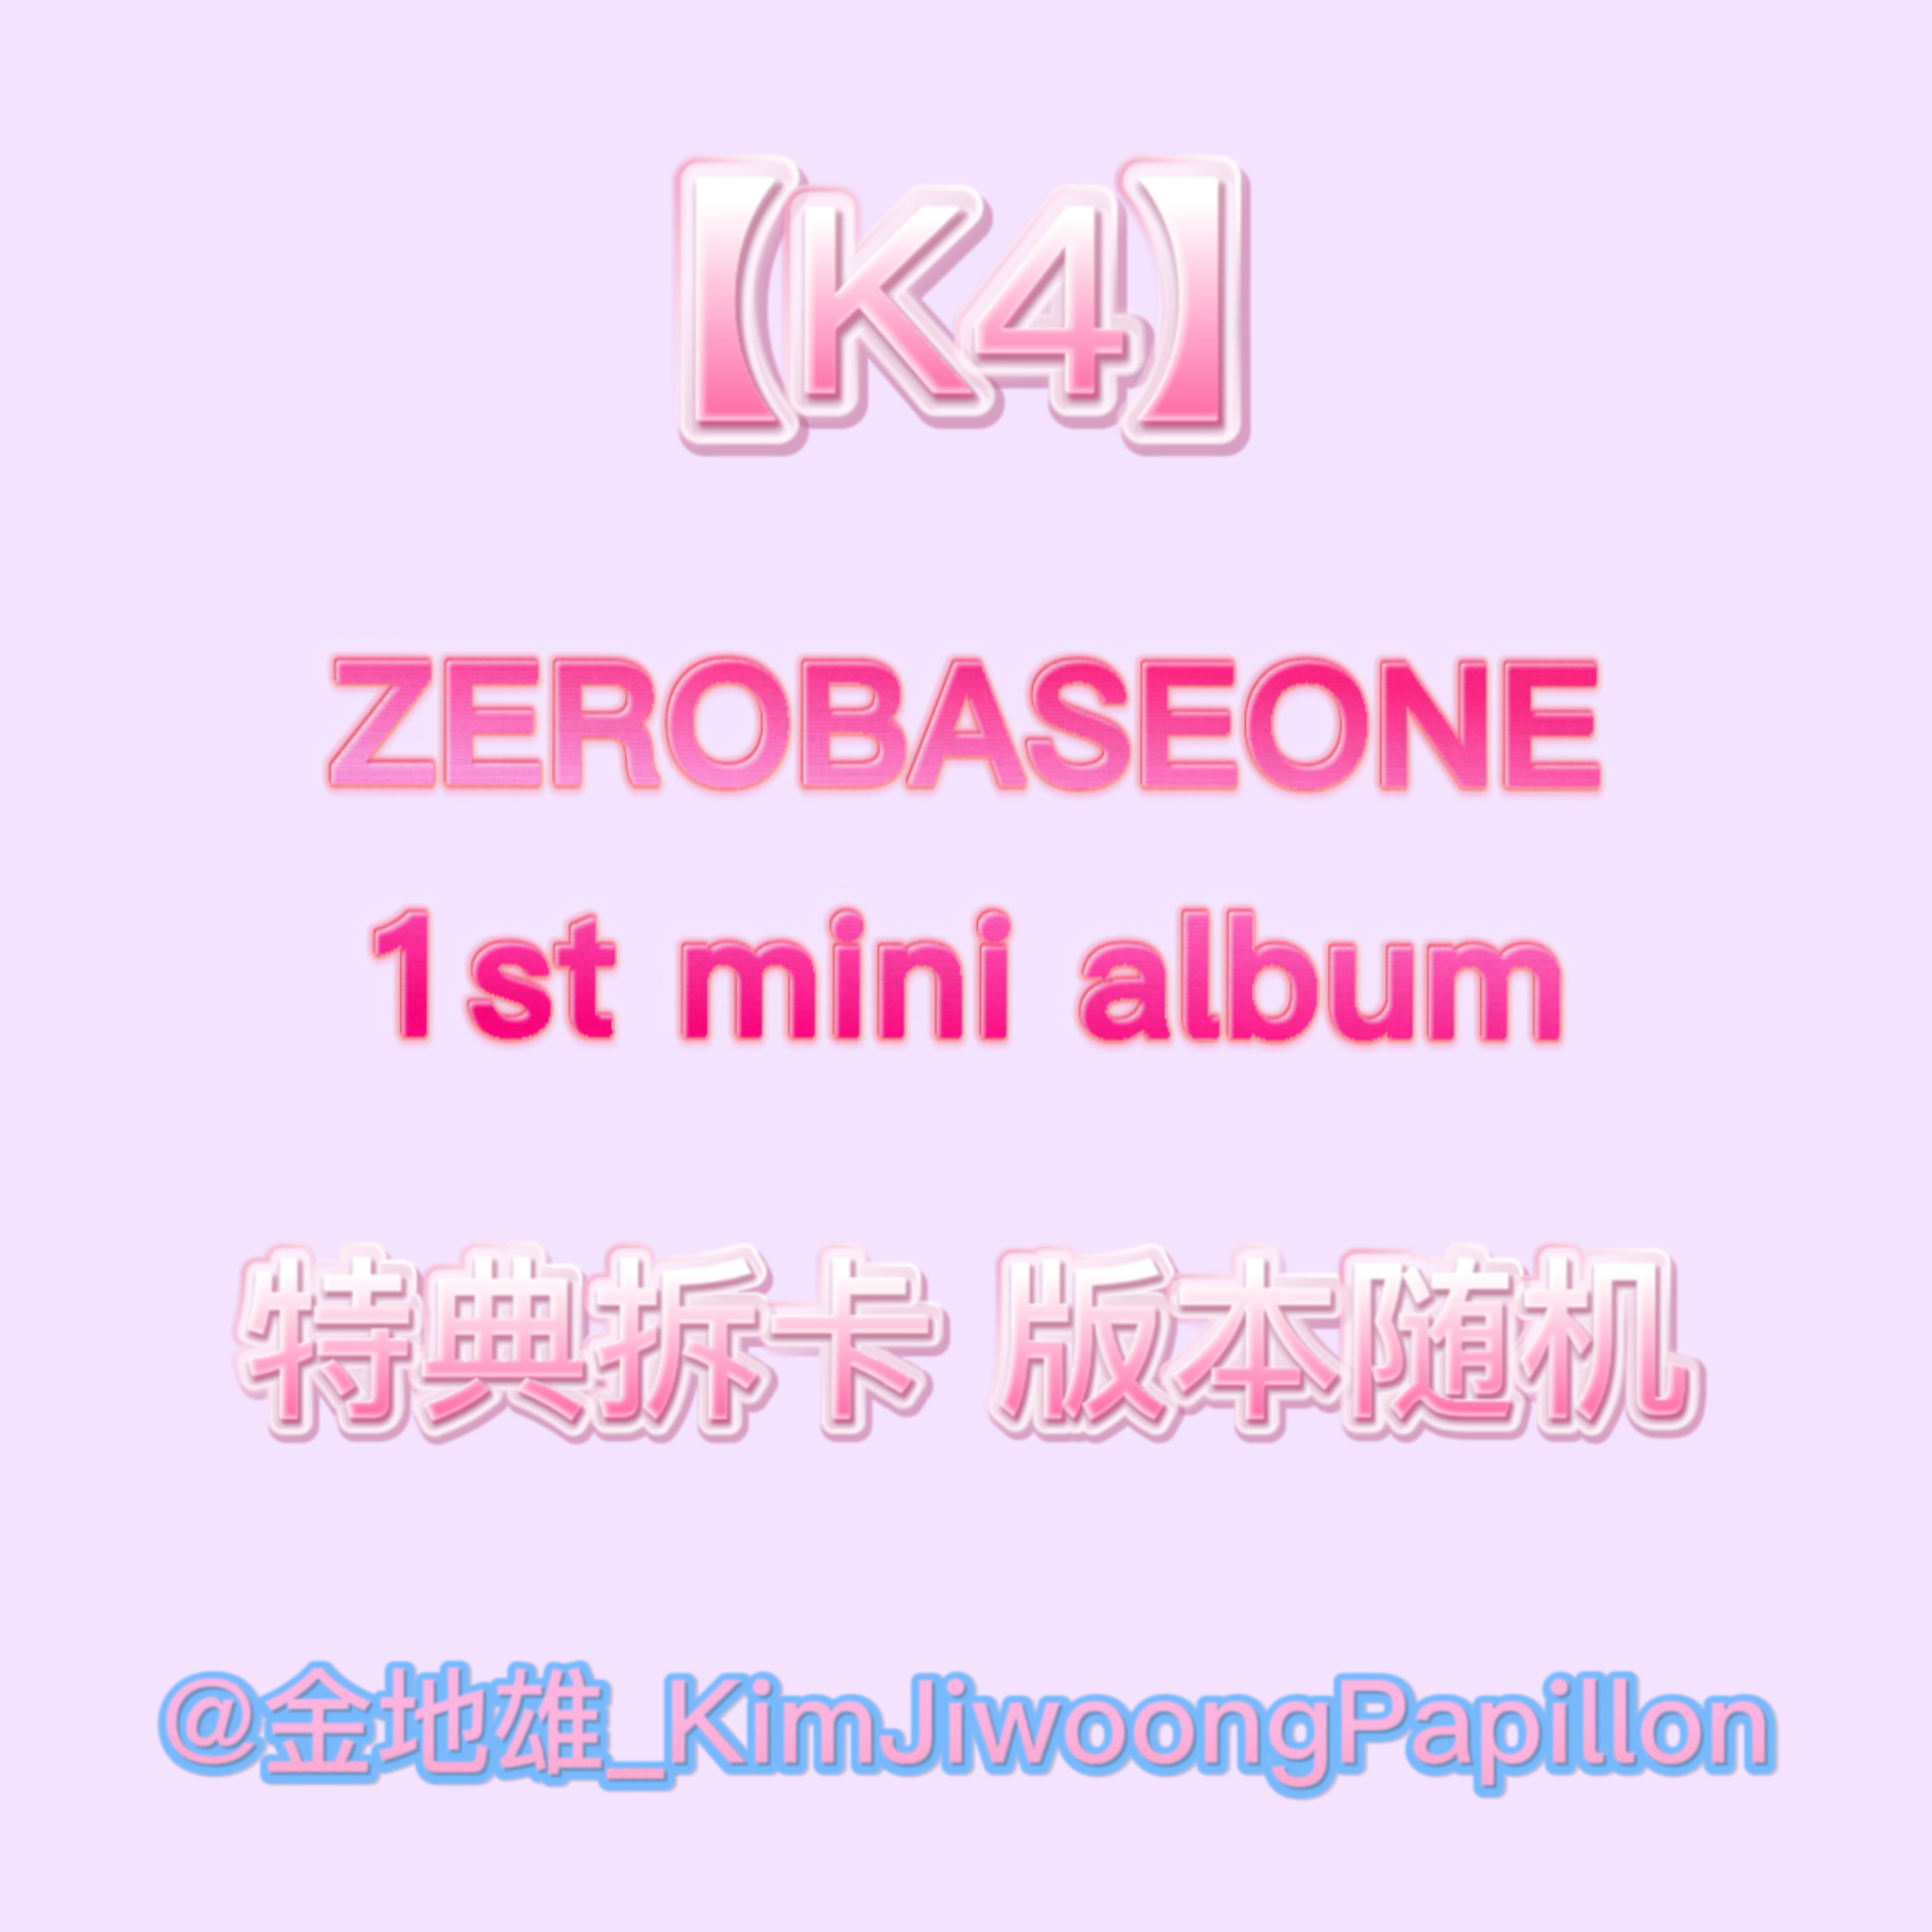 [拆卡专] [Ktown4u Special Gift] ZEROBASEONE - The 1st Mini Album [YOUTH IN THE SHADE] (Random Ver.)_金地雄_KimjiwoongPapillon